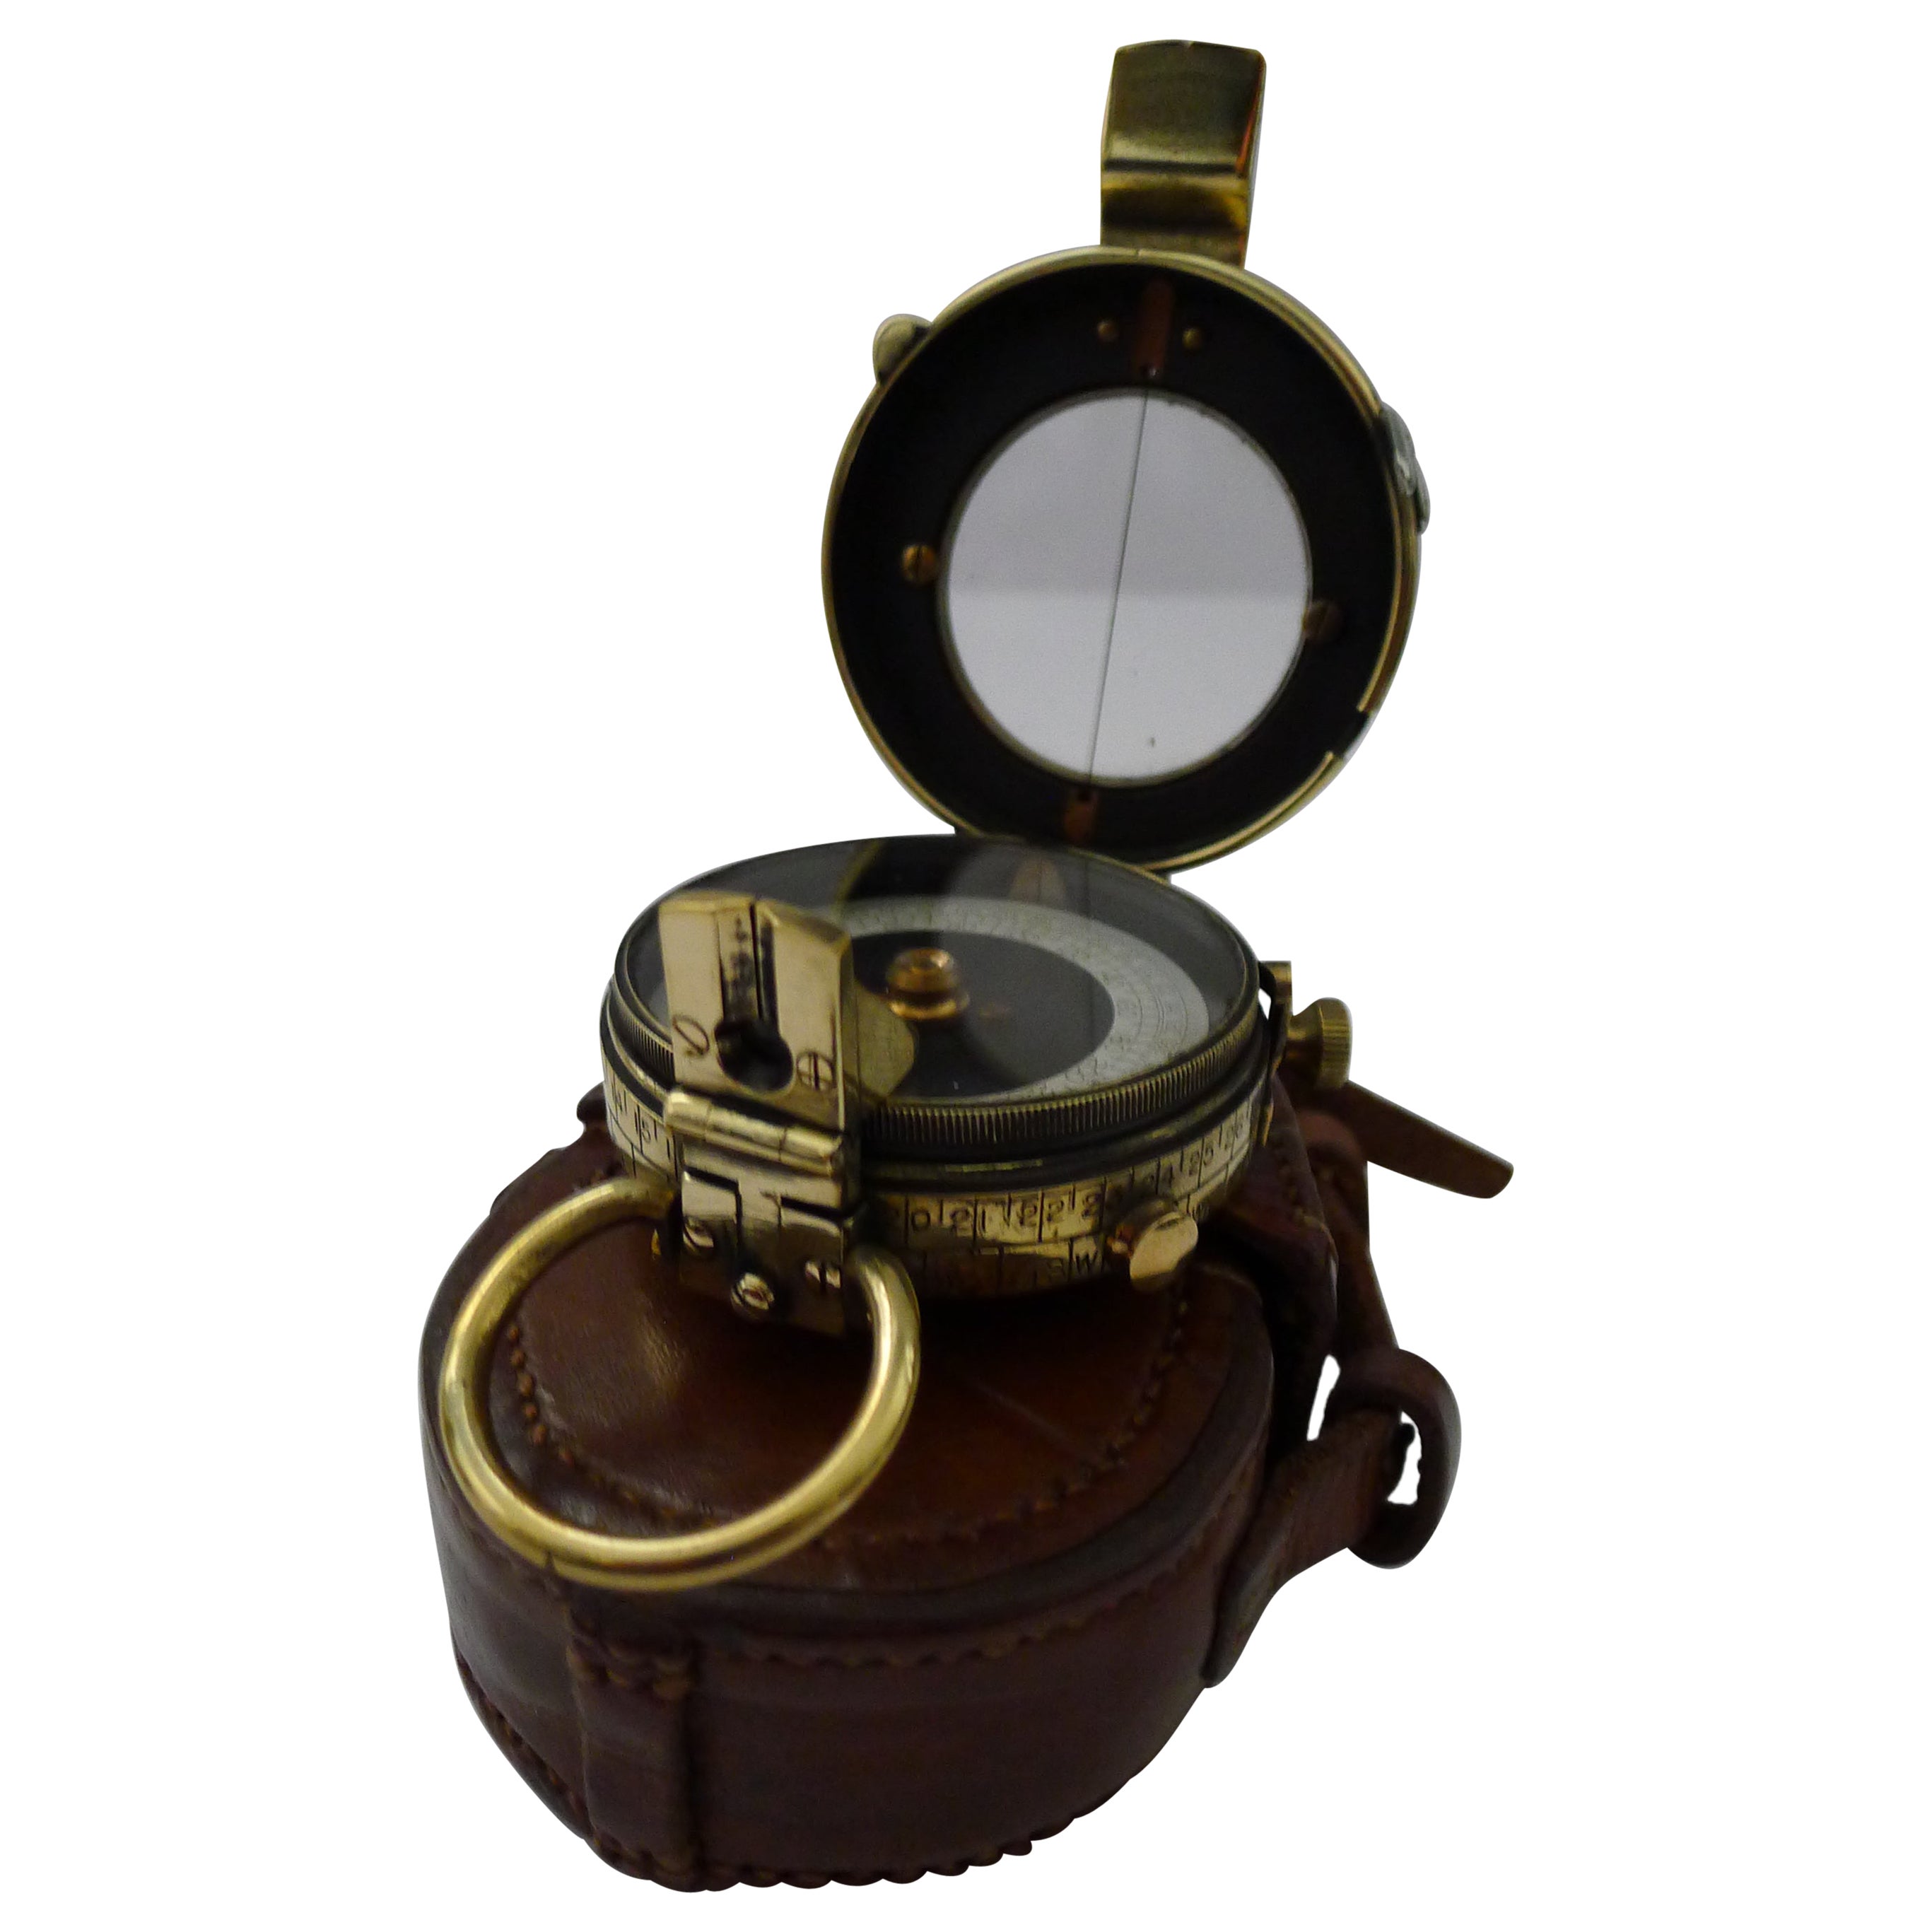 WW1 1918 Britischer Offizierkompass der britischen Armee der Armee - Verner's Patent MK VII von French Ltd.